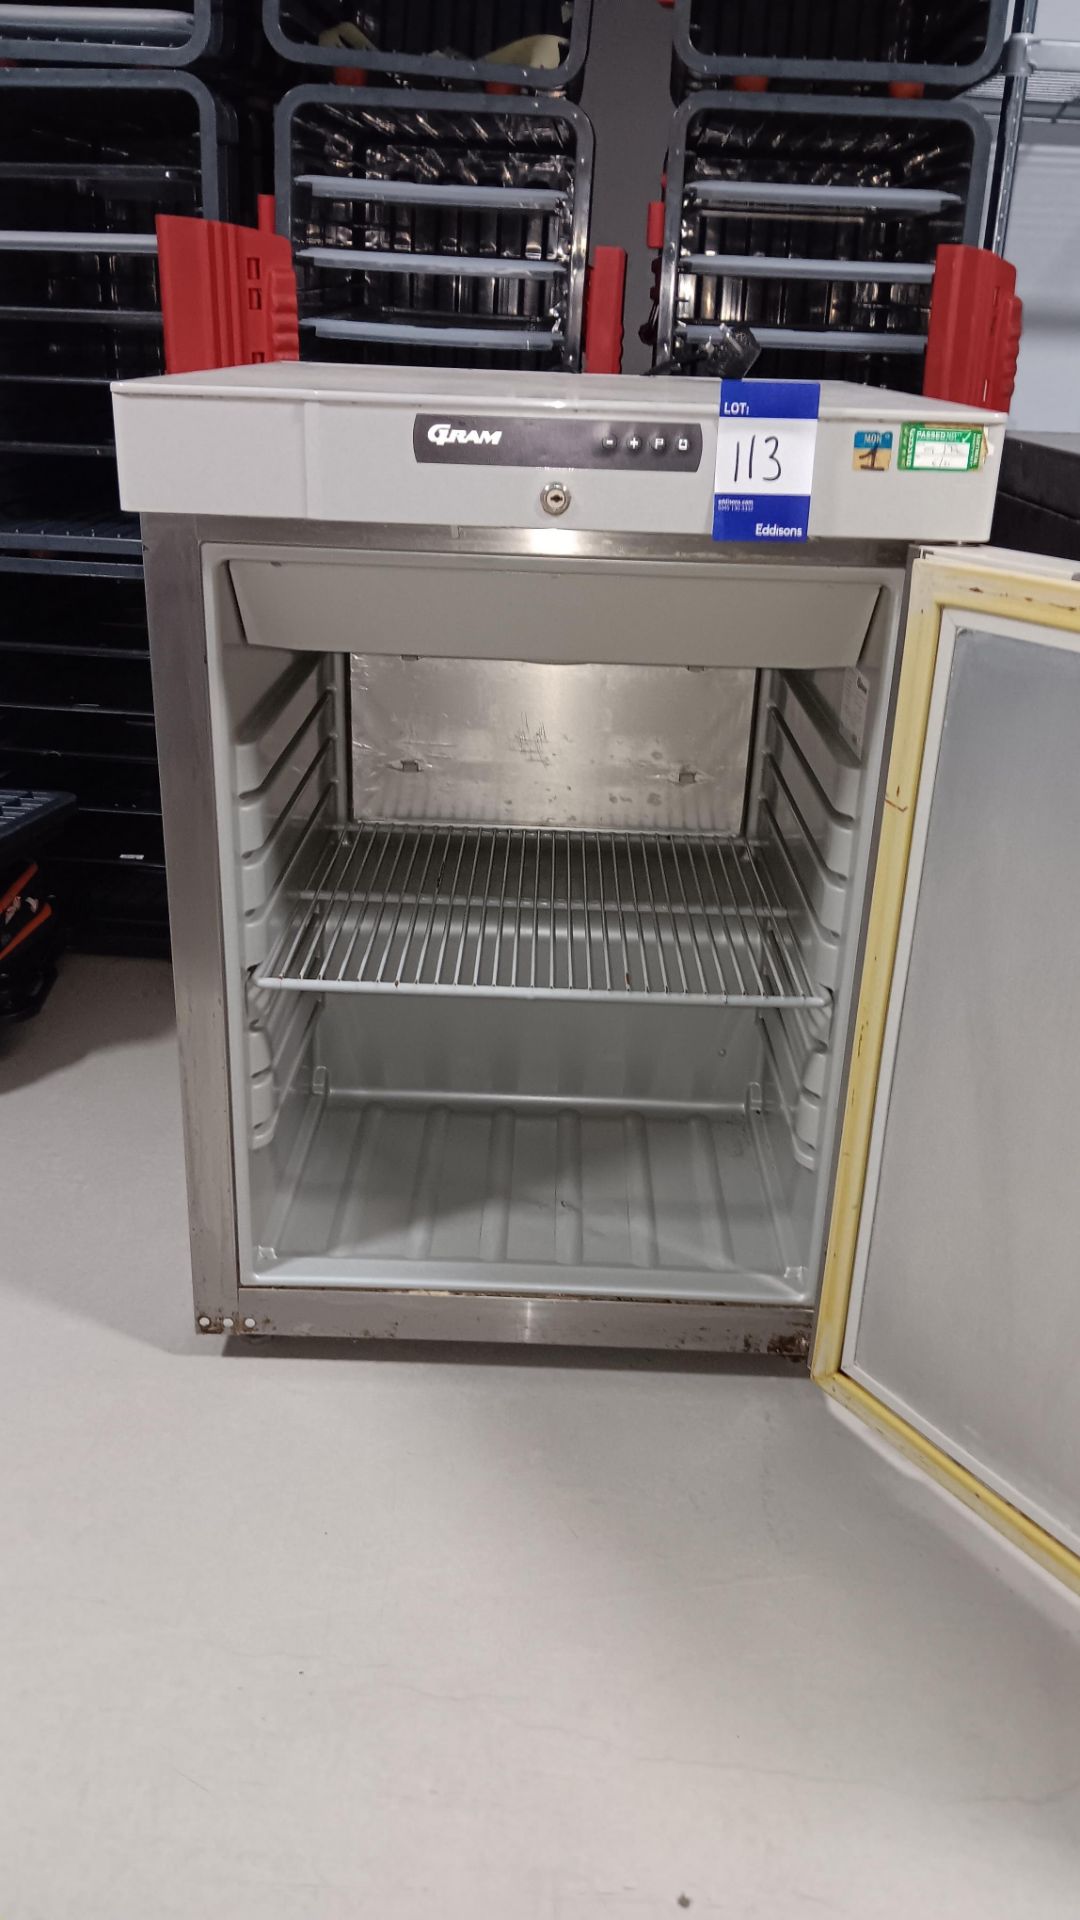 Gram K210RG3N Stainless steel undercounter single door refrigerator, Serial number 10121530 (Aug - Image 2 of 4